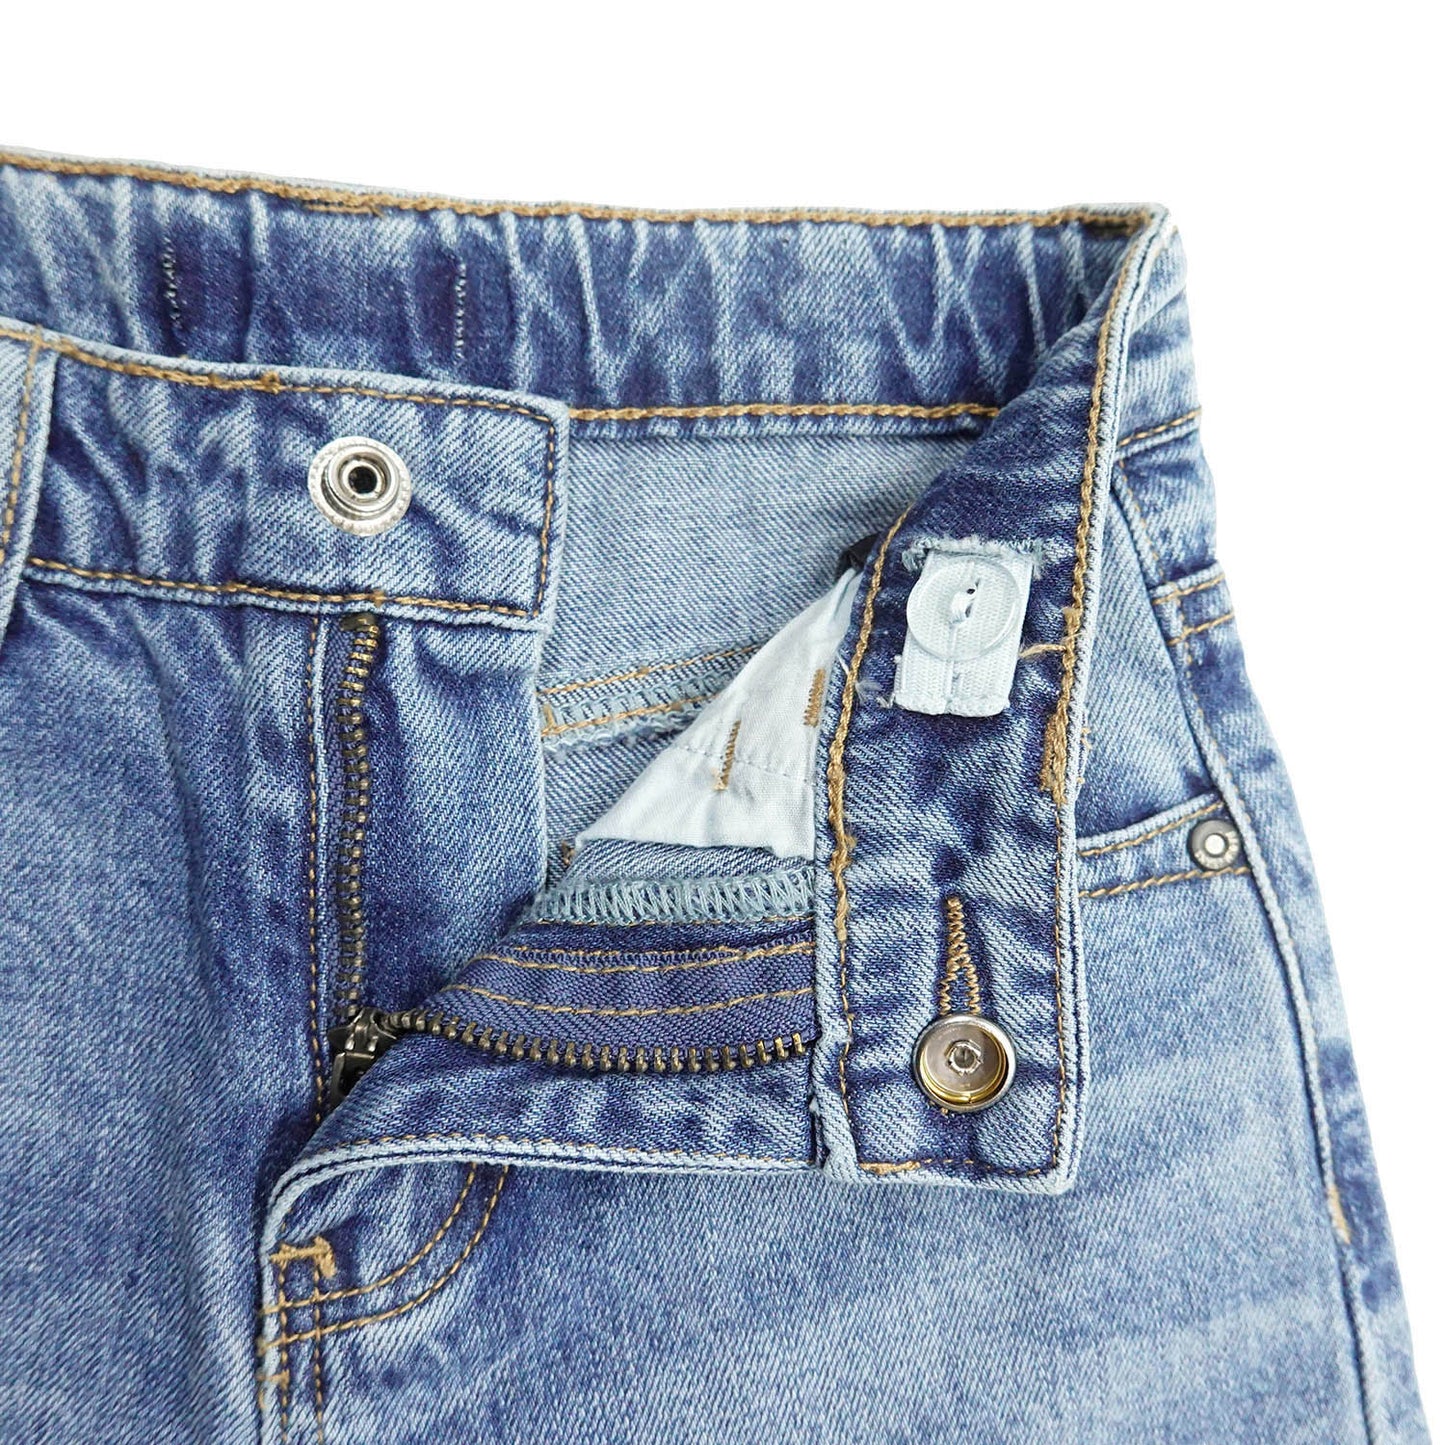 Girls Jeans Kids Wide Leg Slim Fit Flared Boot Cut Denim Pants